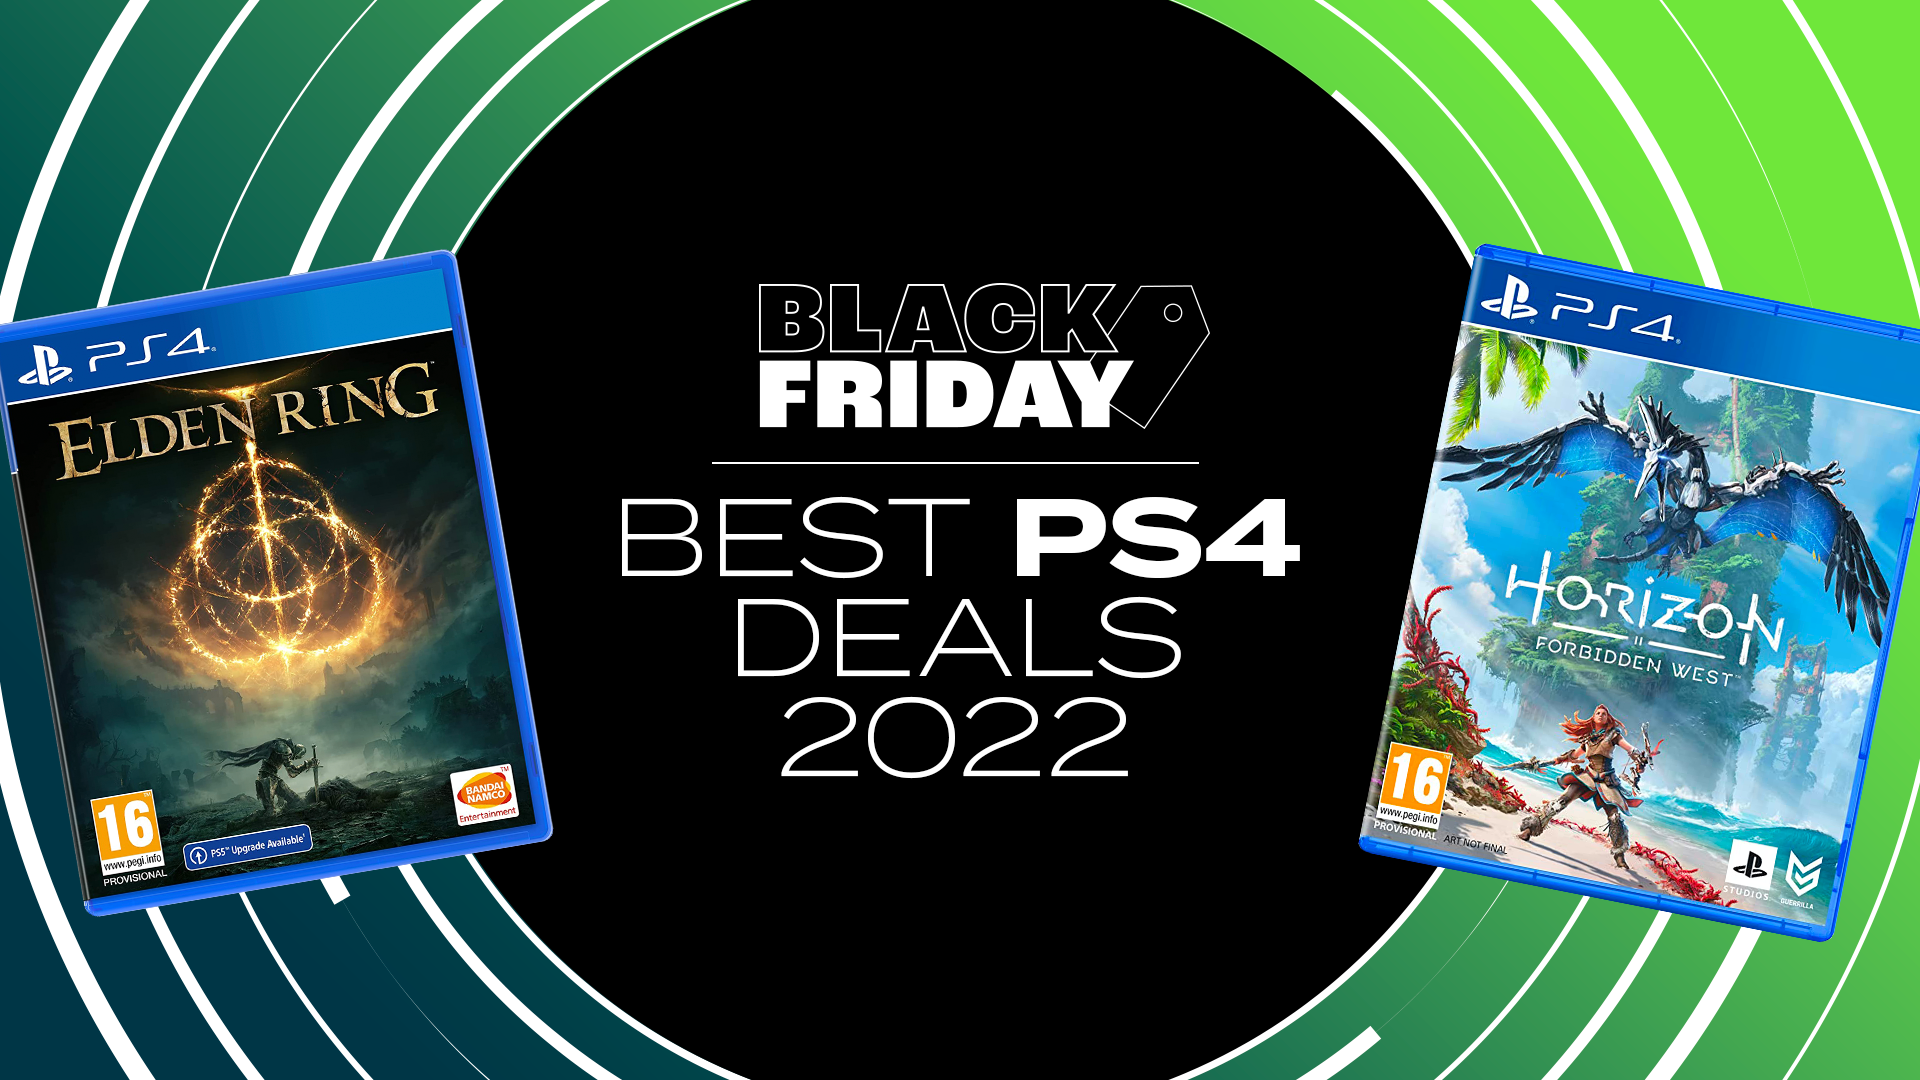 Black Friday PS4 Deals 2022